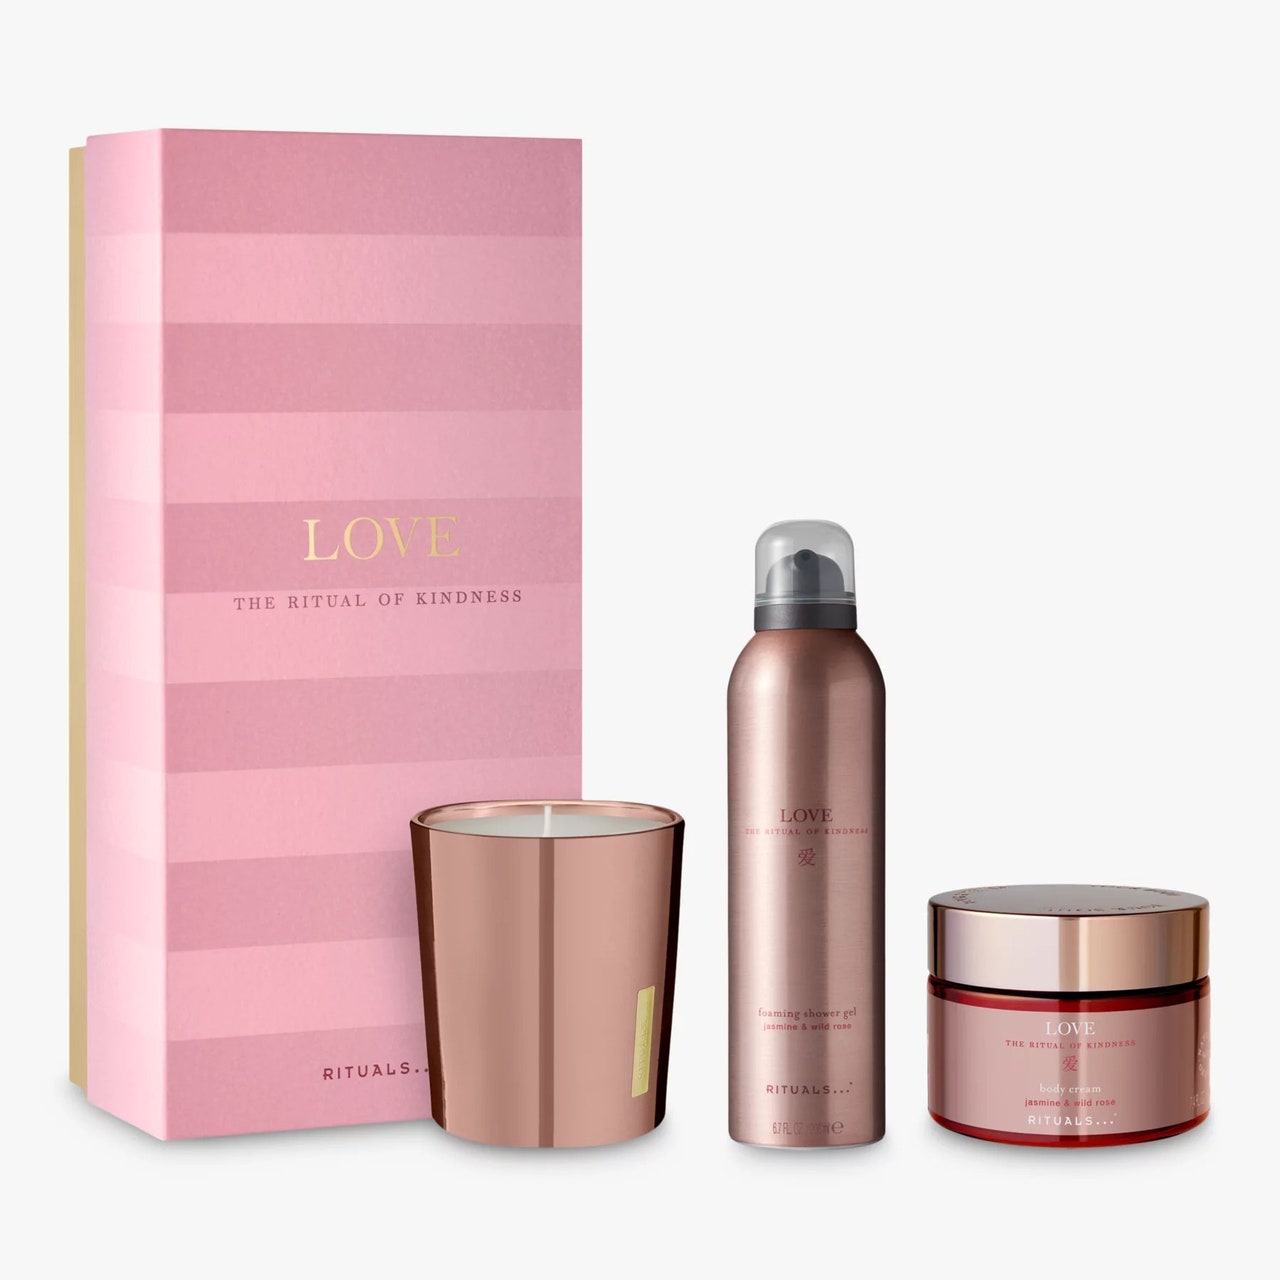 Rituals Love Gift Set drei Produkte aus Roségold und rosa Box auf weißem Hintergrund